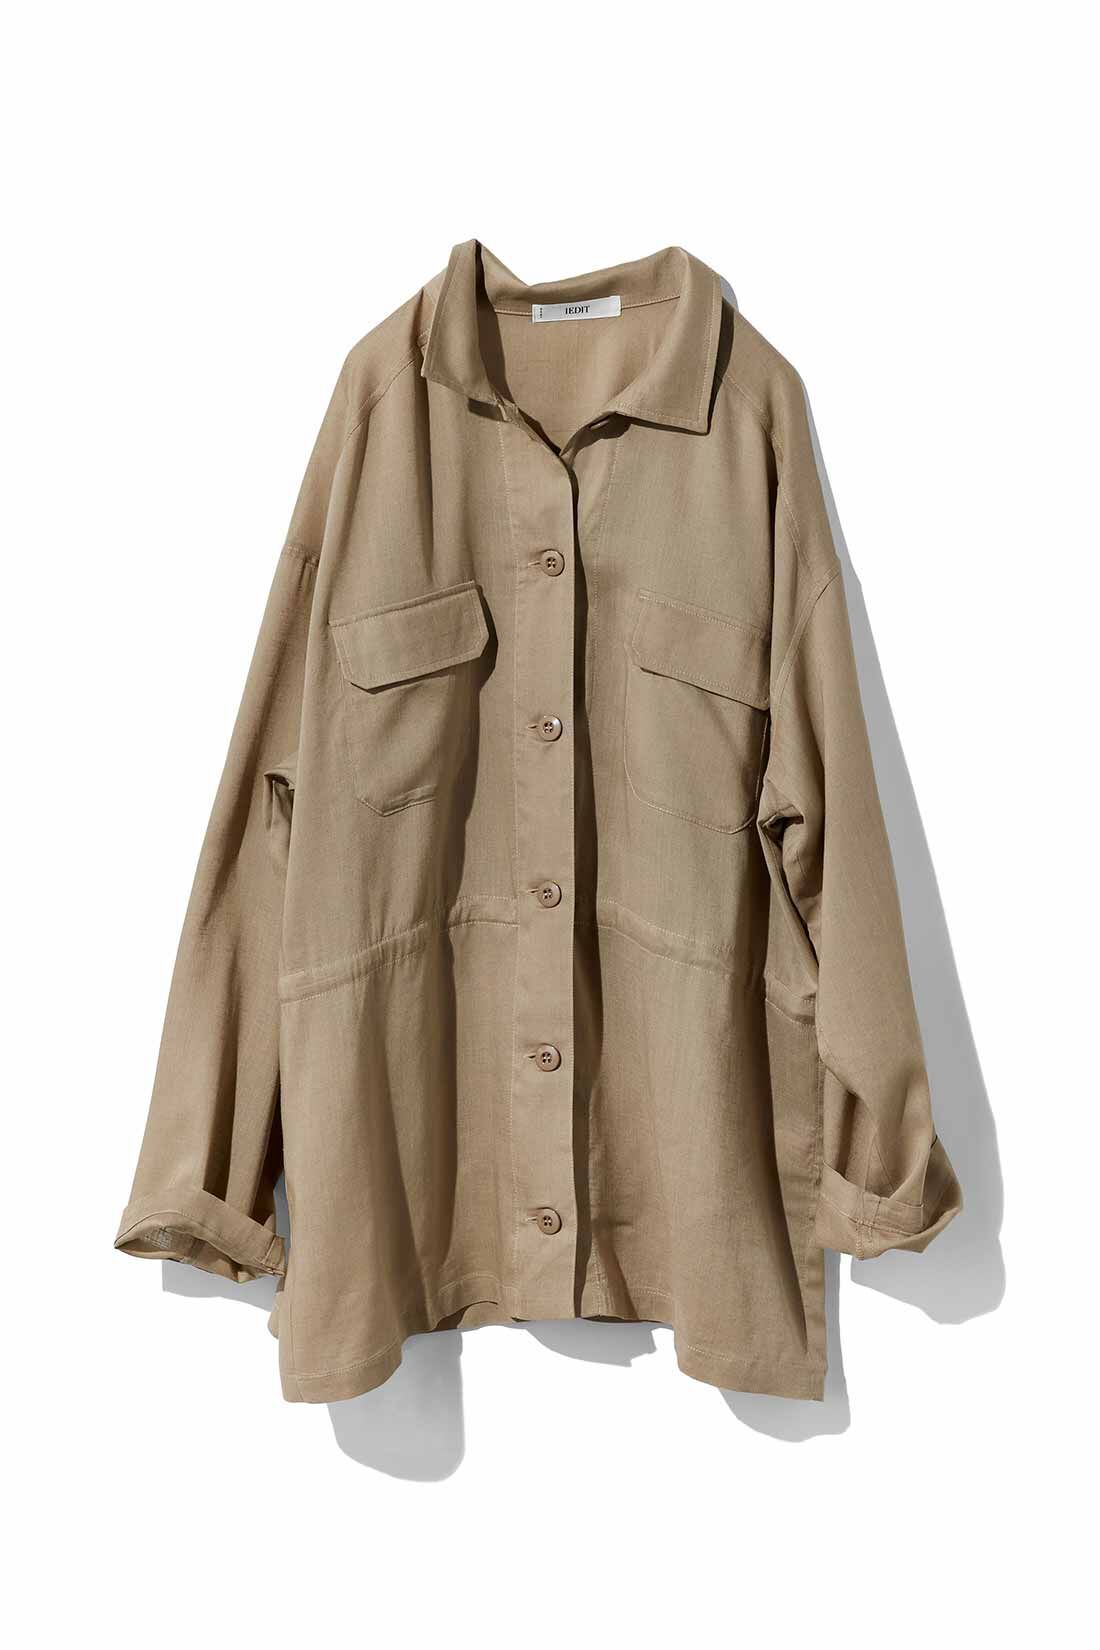 IEDIT[イディット]　リネン混素材のミリタリーシャツジャケット〈カーキグリーン〉|〈ベージュ〉